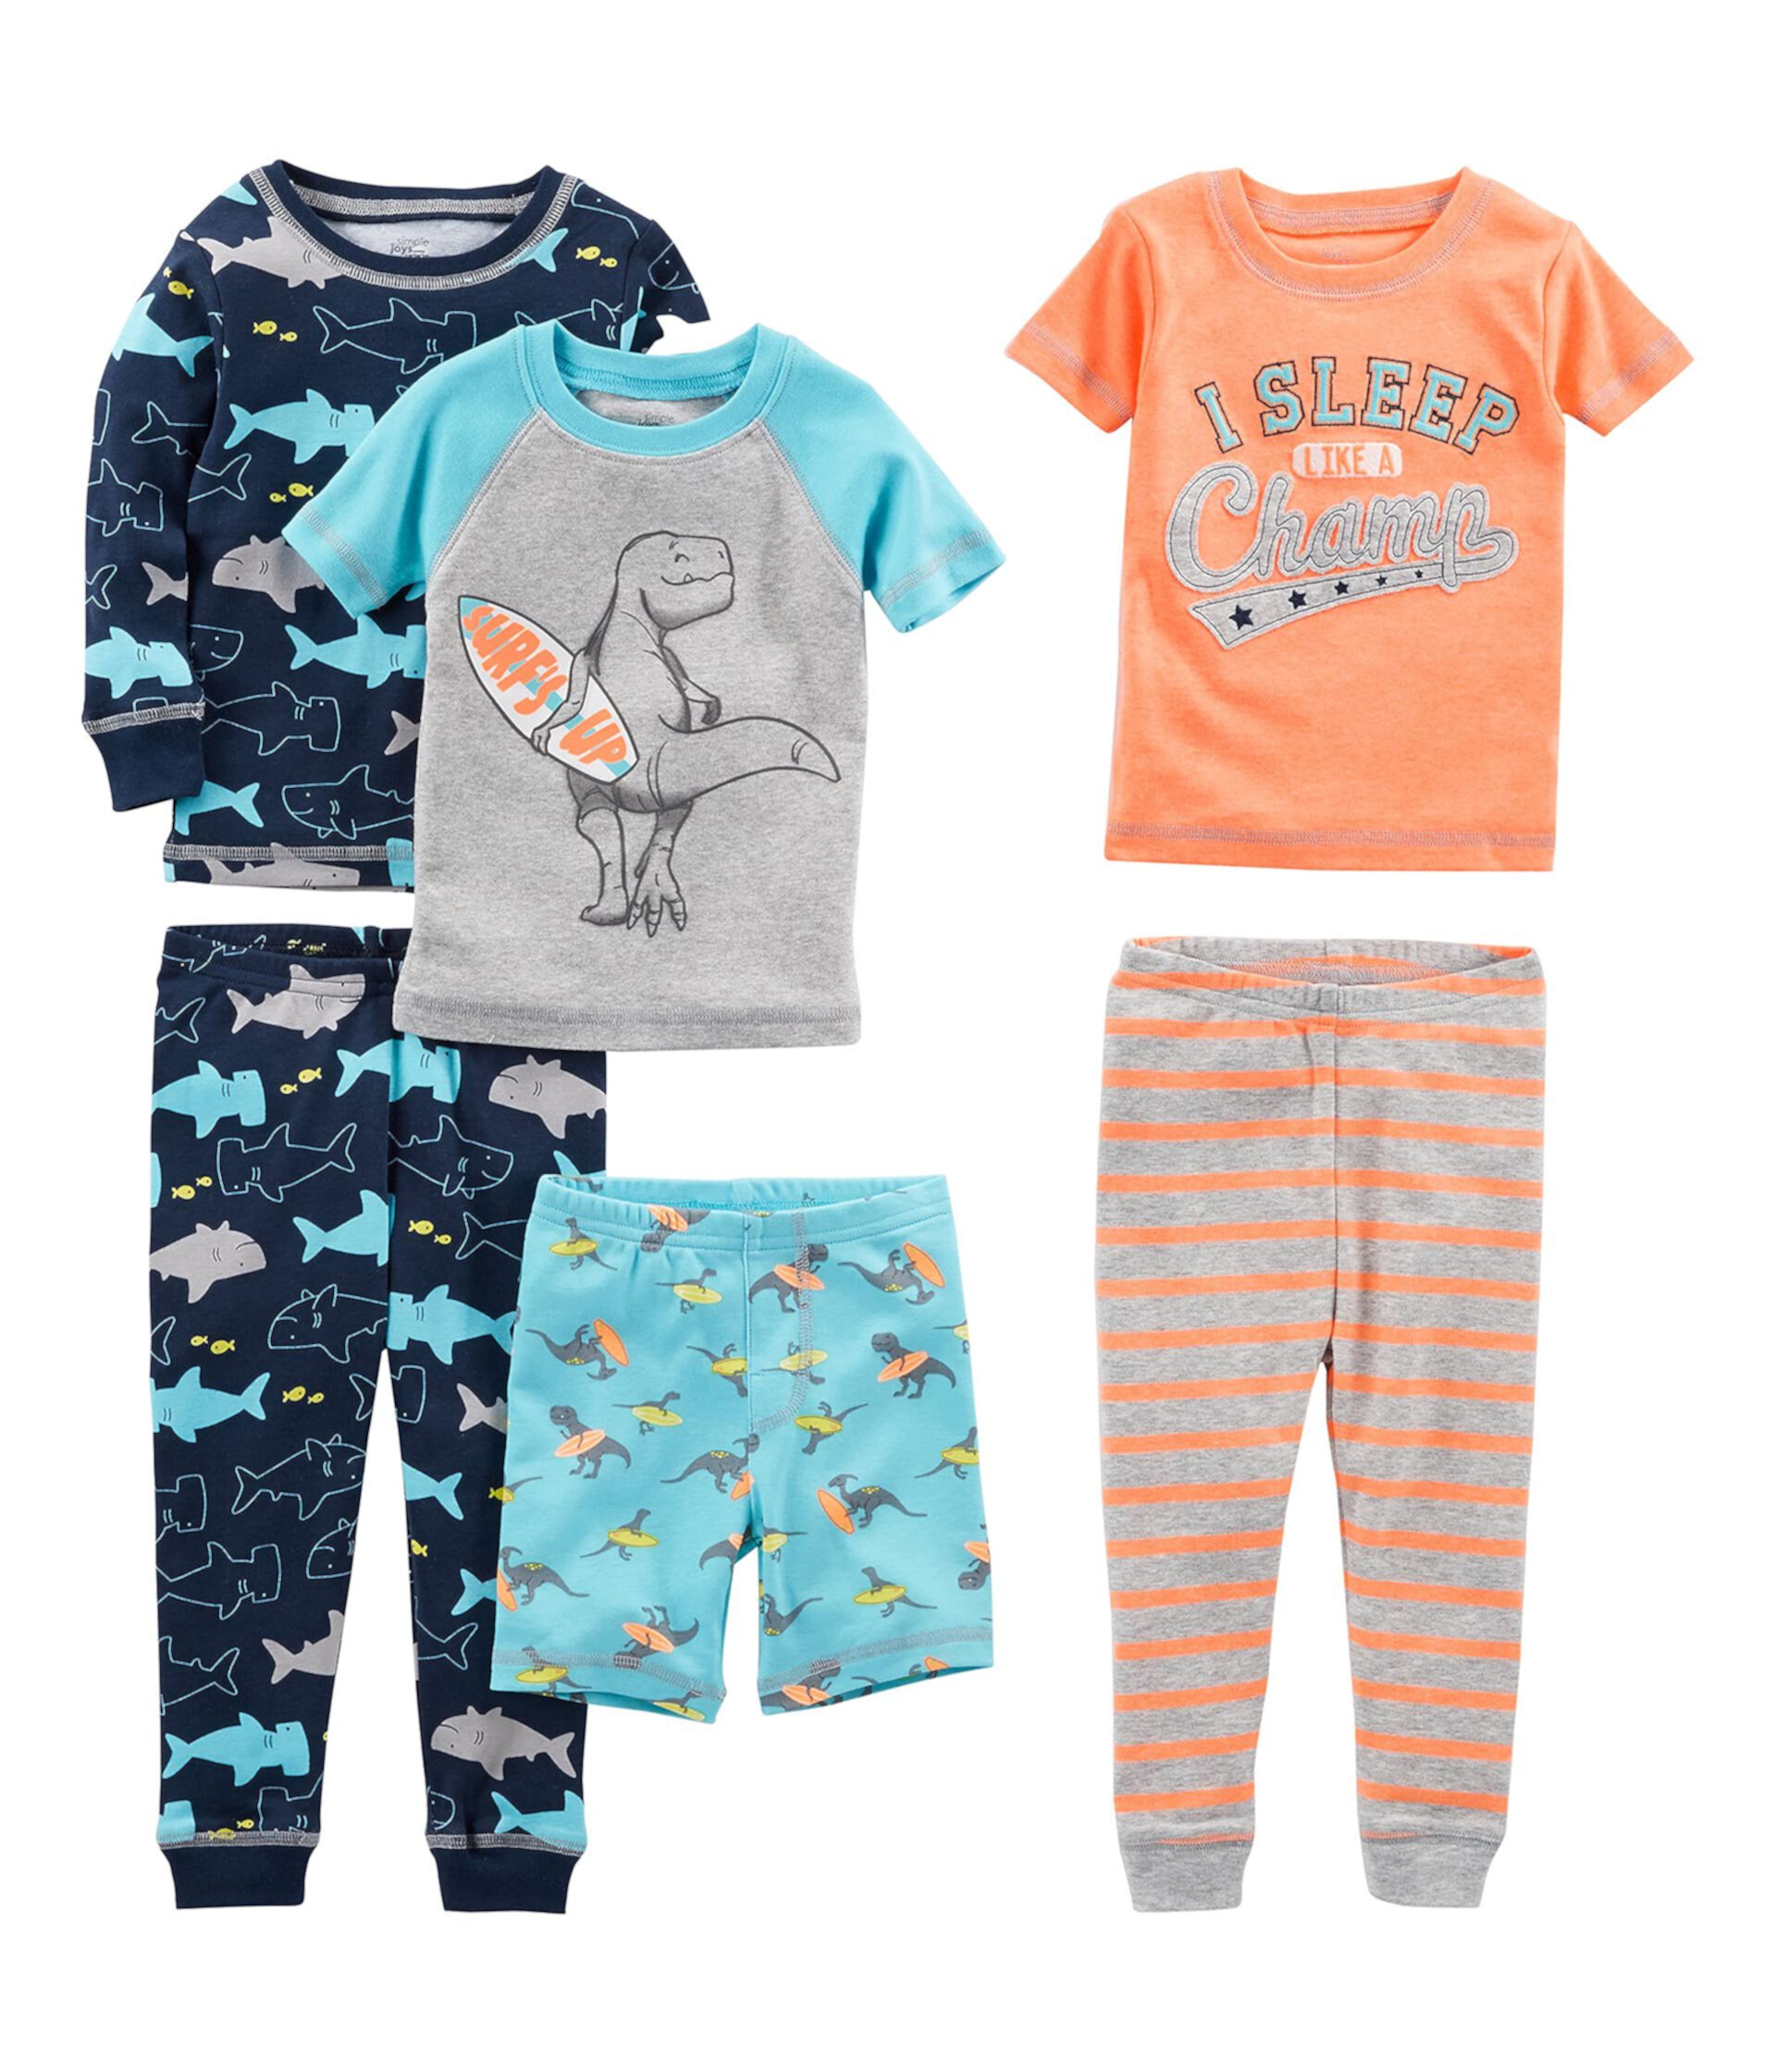 Хлопковая пижама Snug Fit из 6 предметов (для малышей) Simple Joys by Carter's